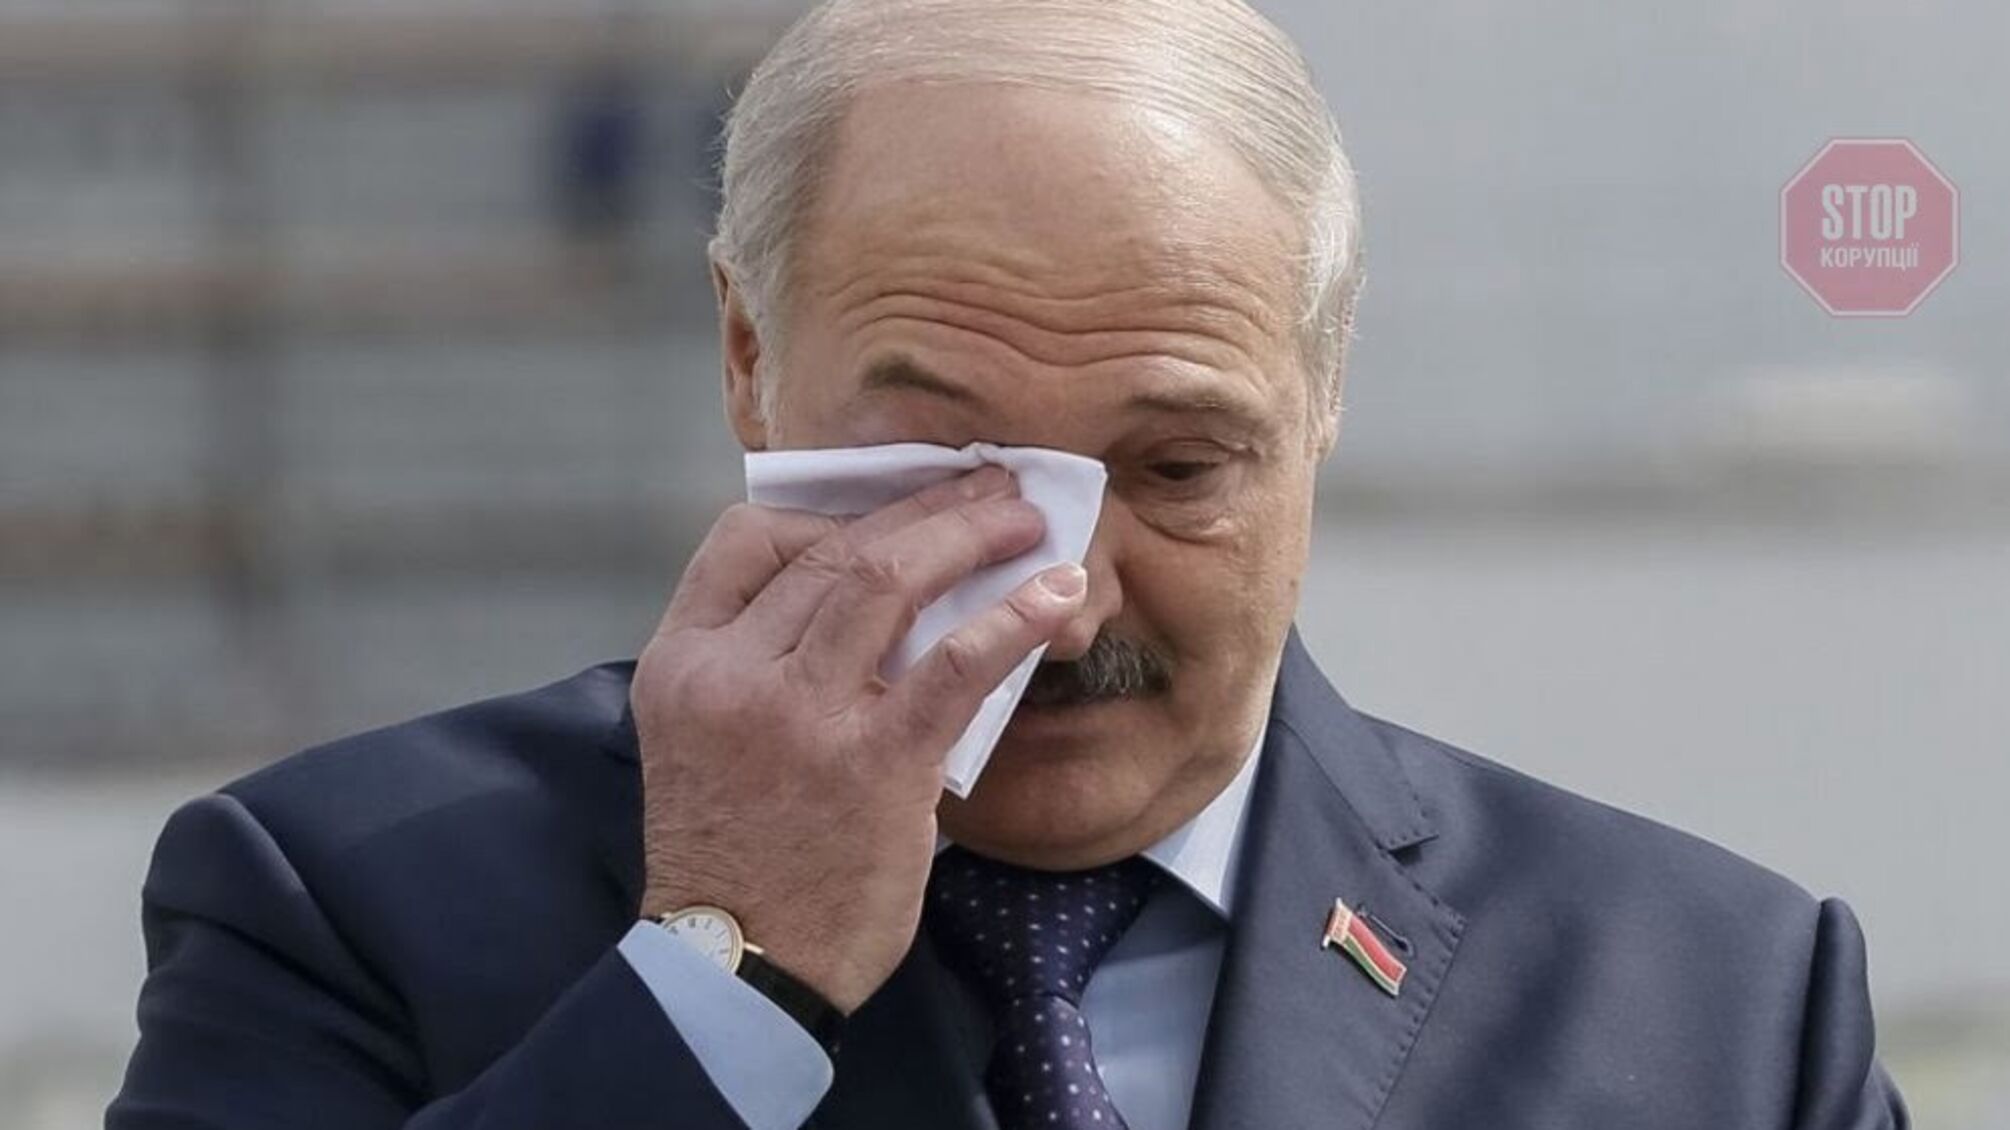 Лукашенко: Мы готовы доставить беженцев на родину самолетами, но они не хотят